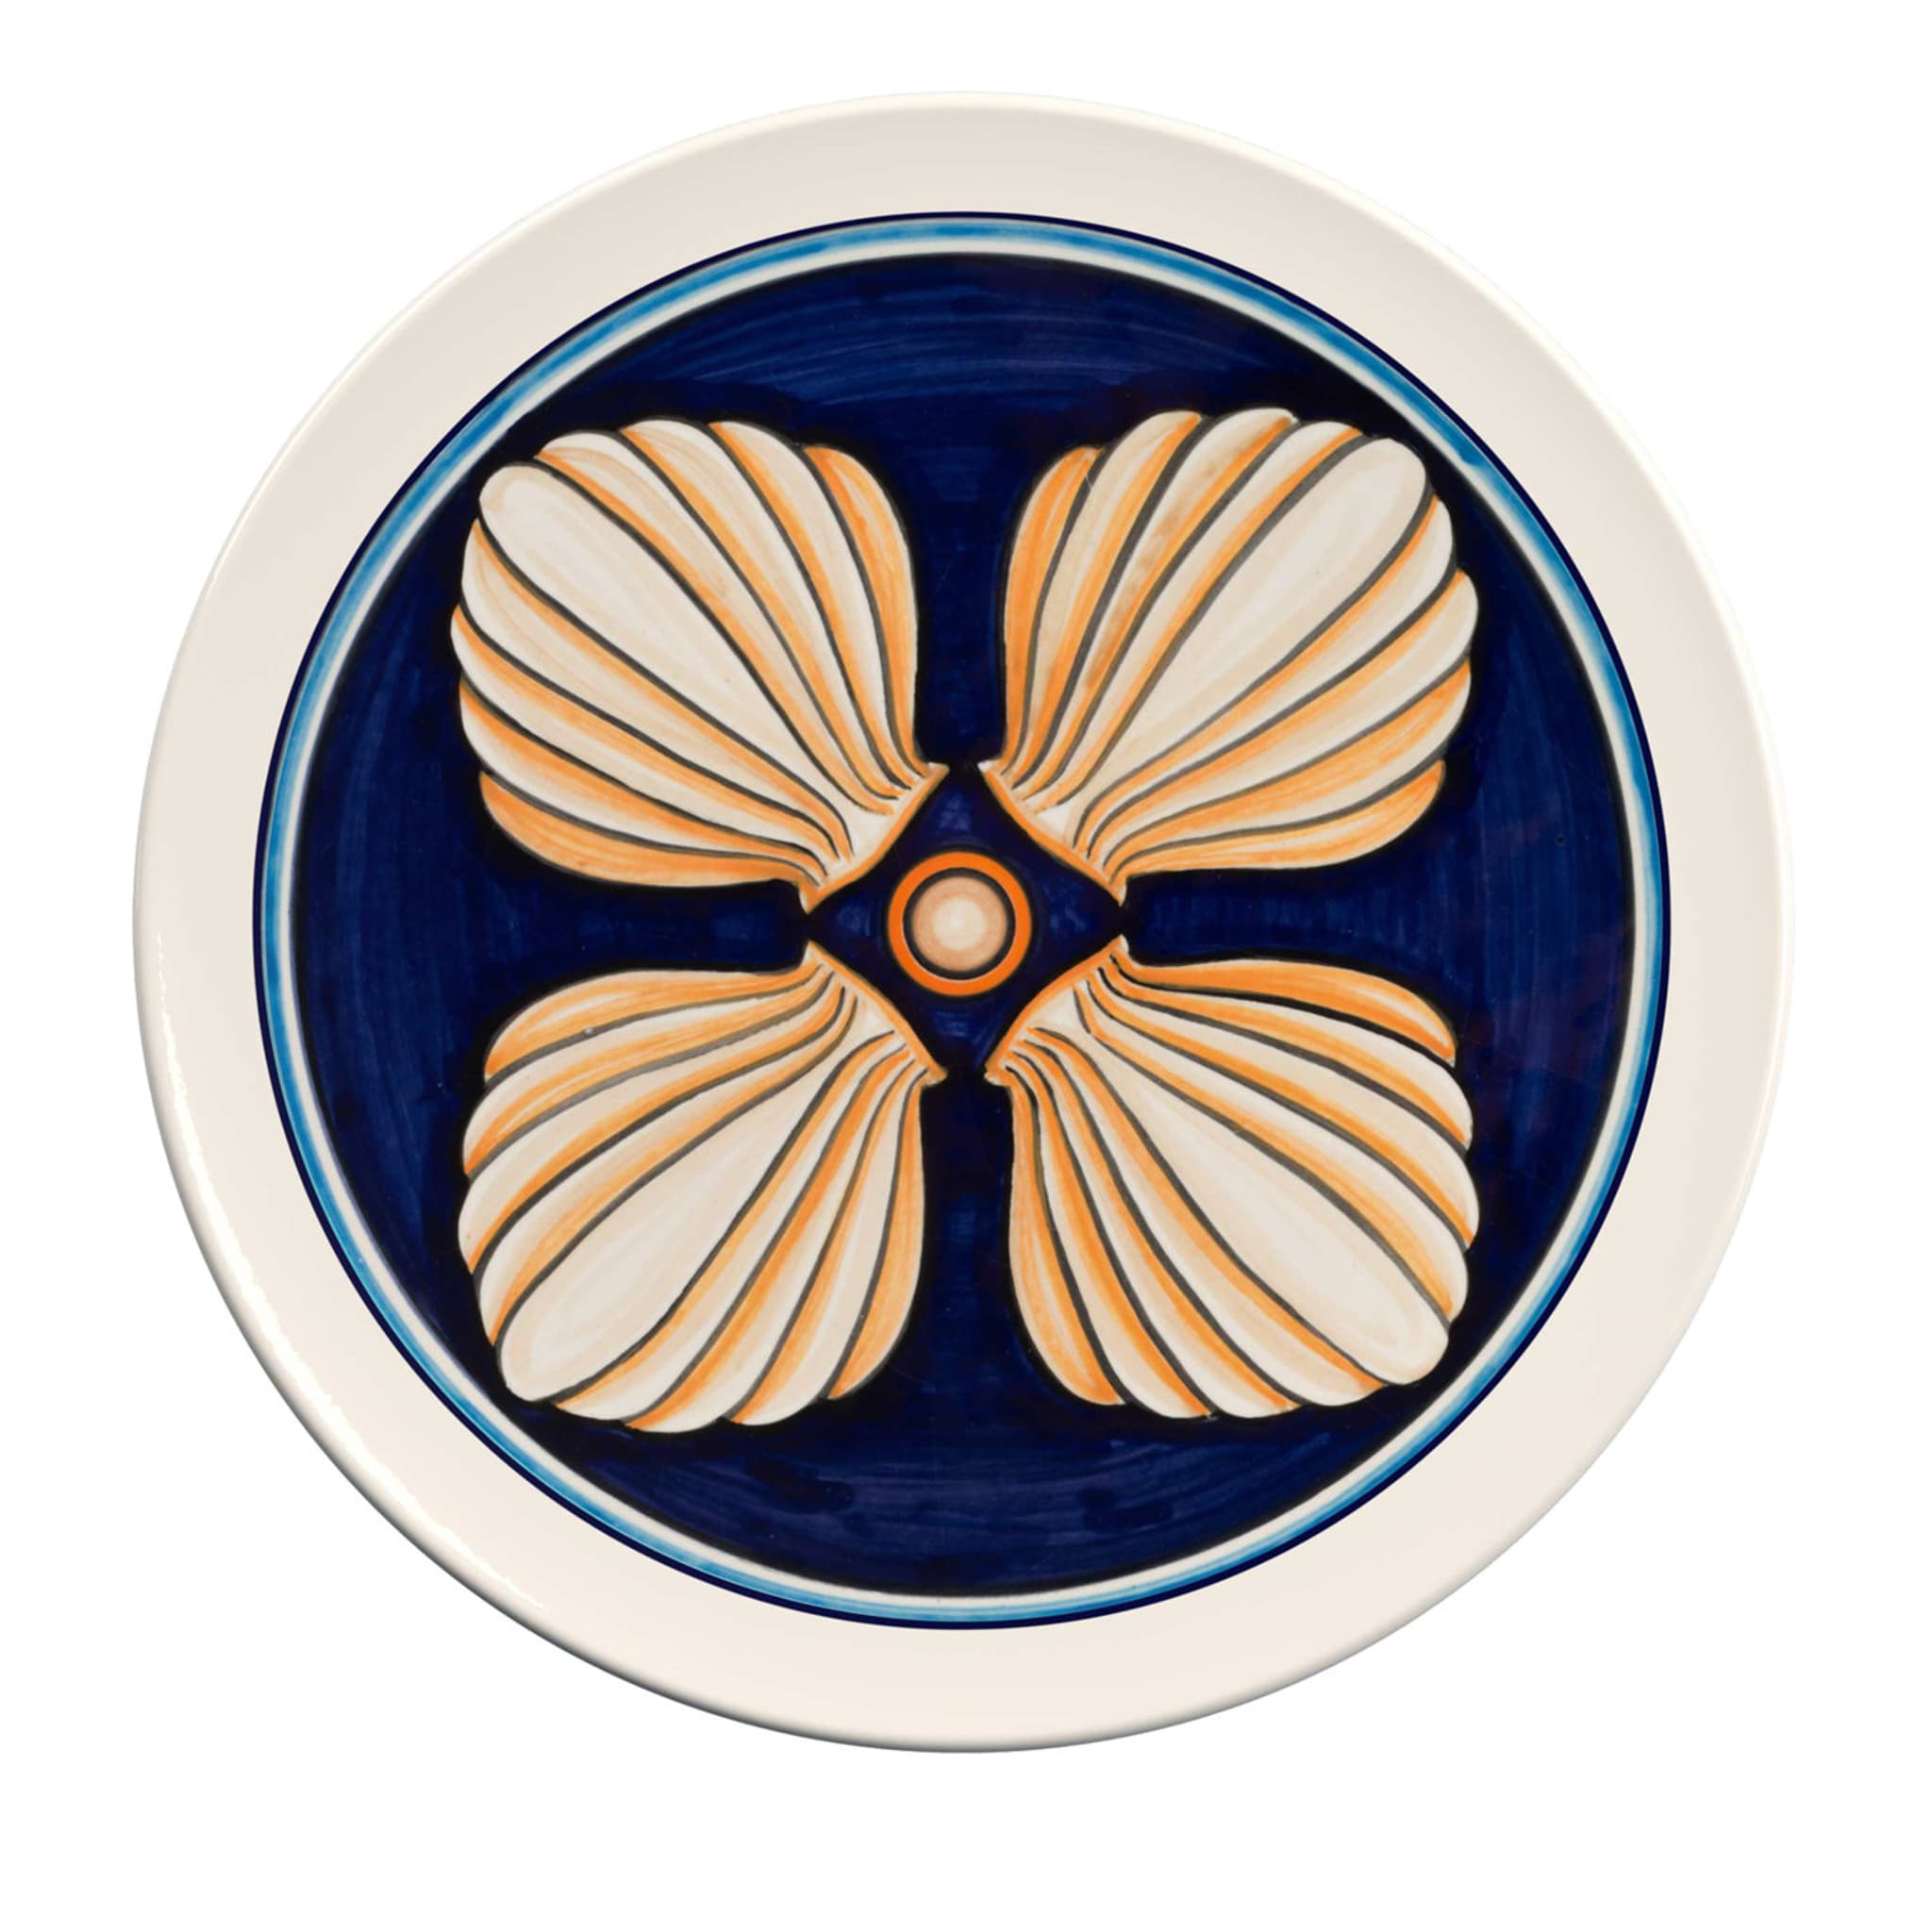 Colapesce Conchiglie Decorative Plate #1 Crisodora